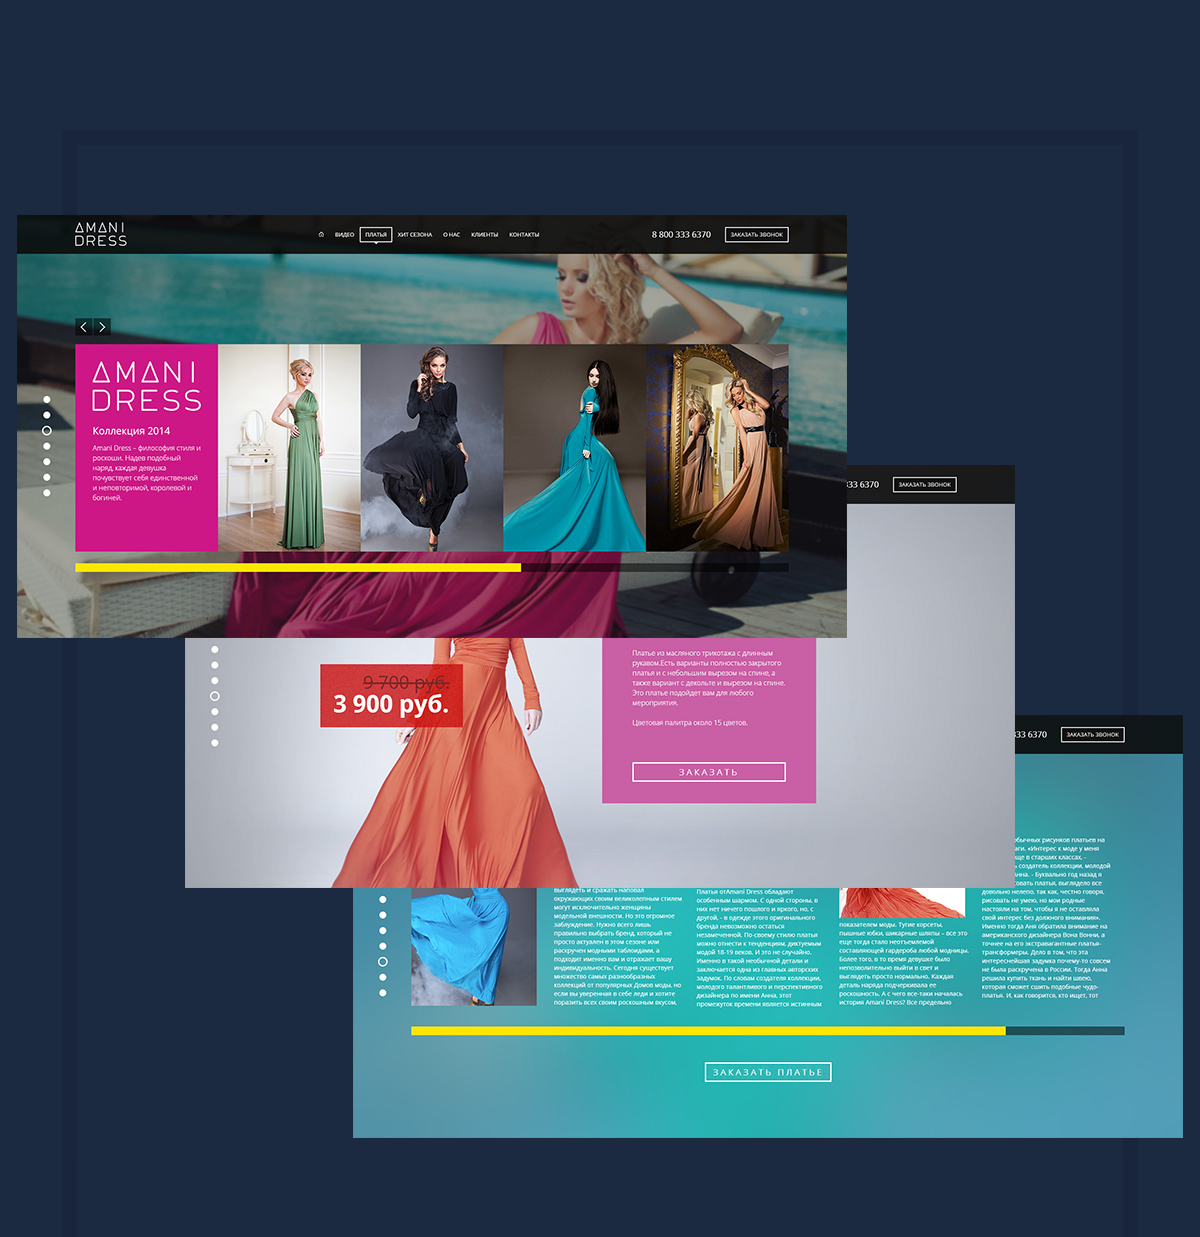 amani dress e-shop dresses UI ux design Web mobile desktop table site grid cross platform